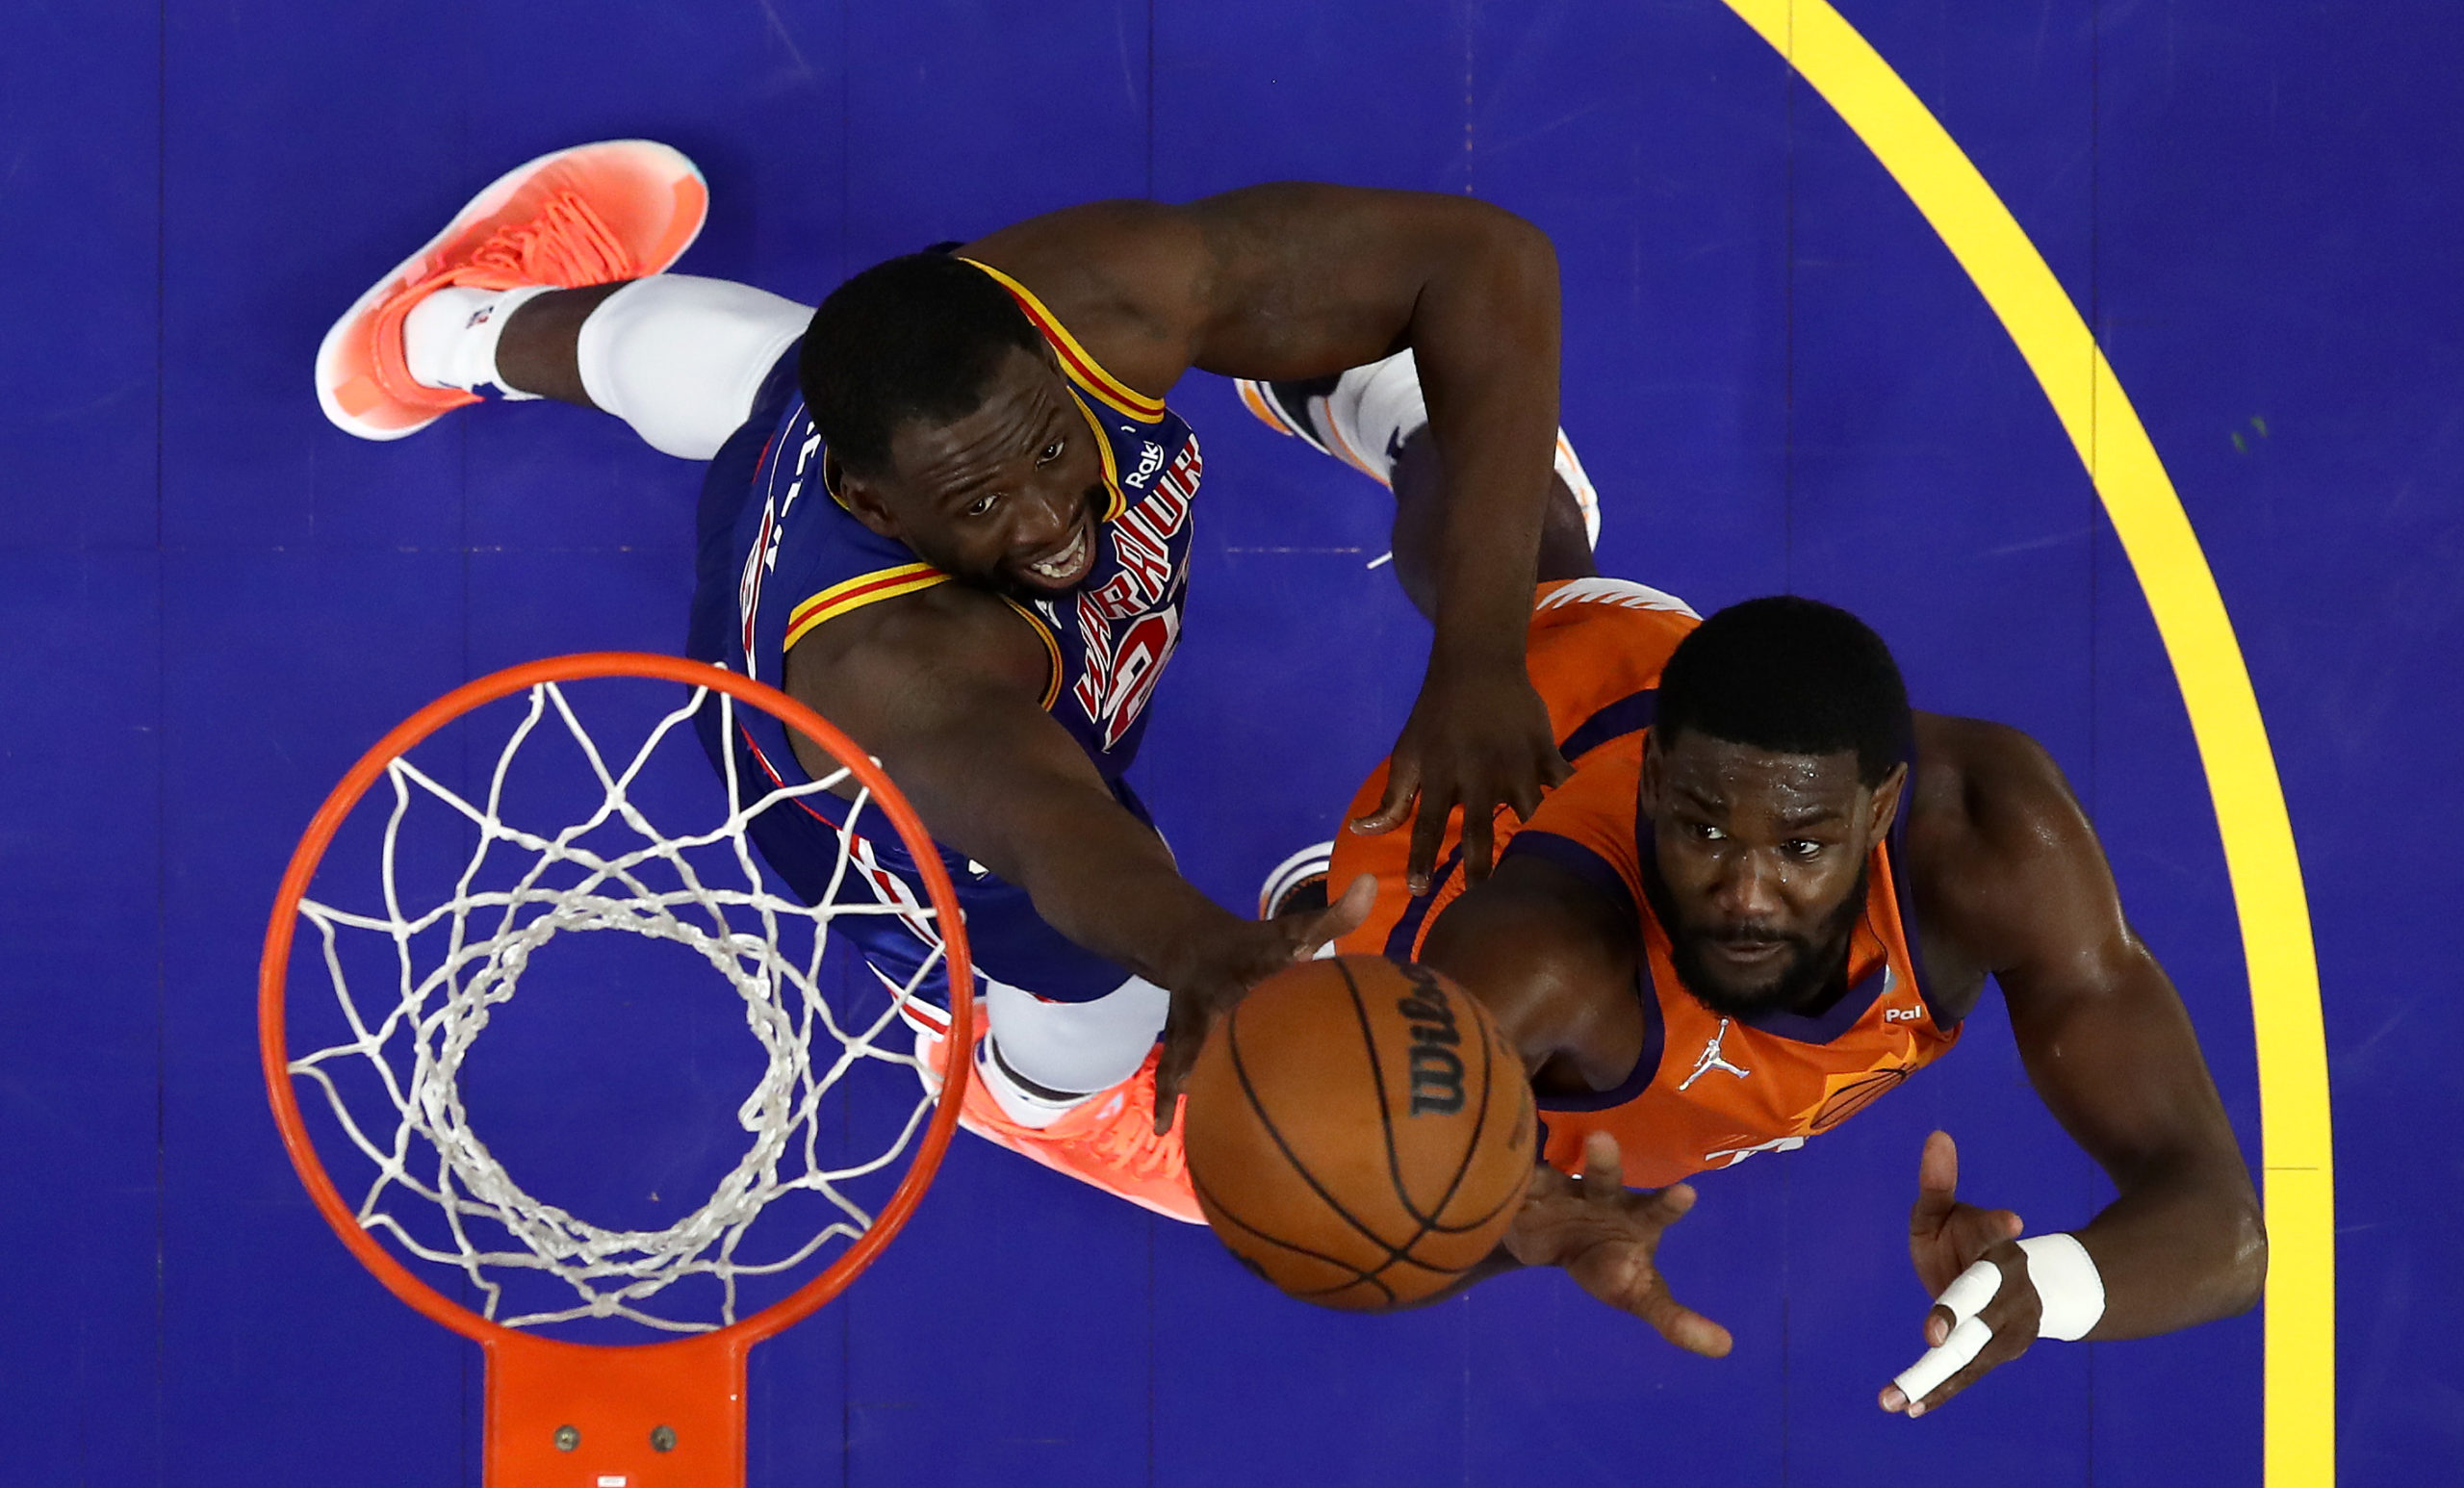 Prime Video exibe rodada dupla de NBA com Thunder x Heat e Suns x Warriors nesta terça-feira, dia 10